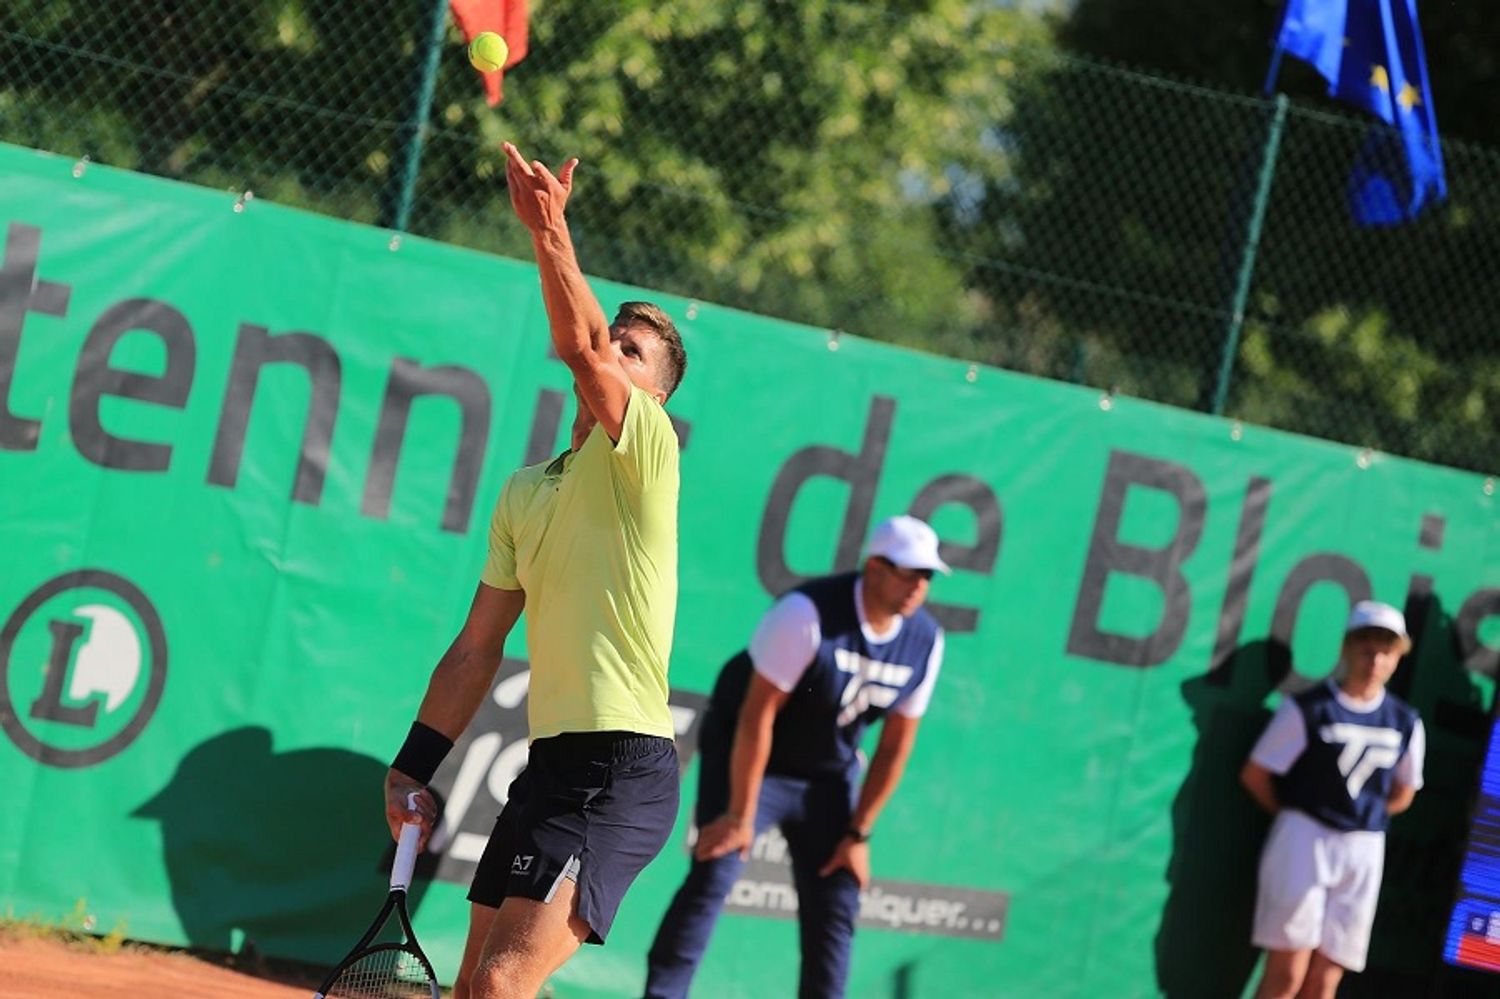 A Blois, le tournoi de tennis Challenger